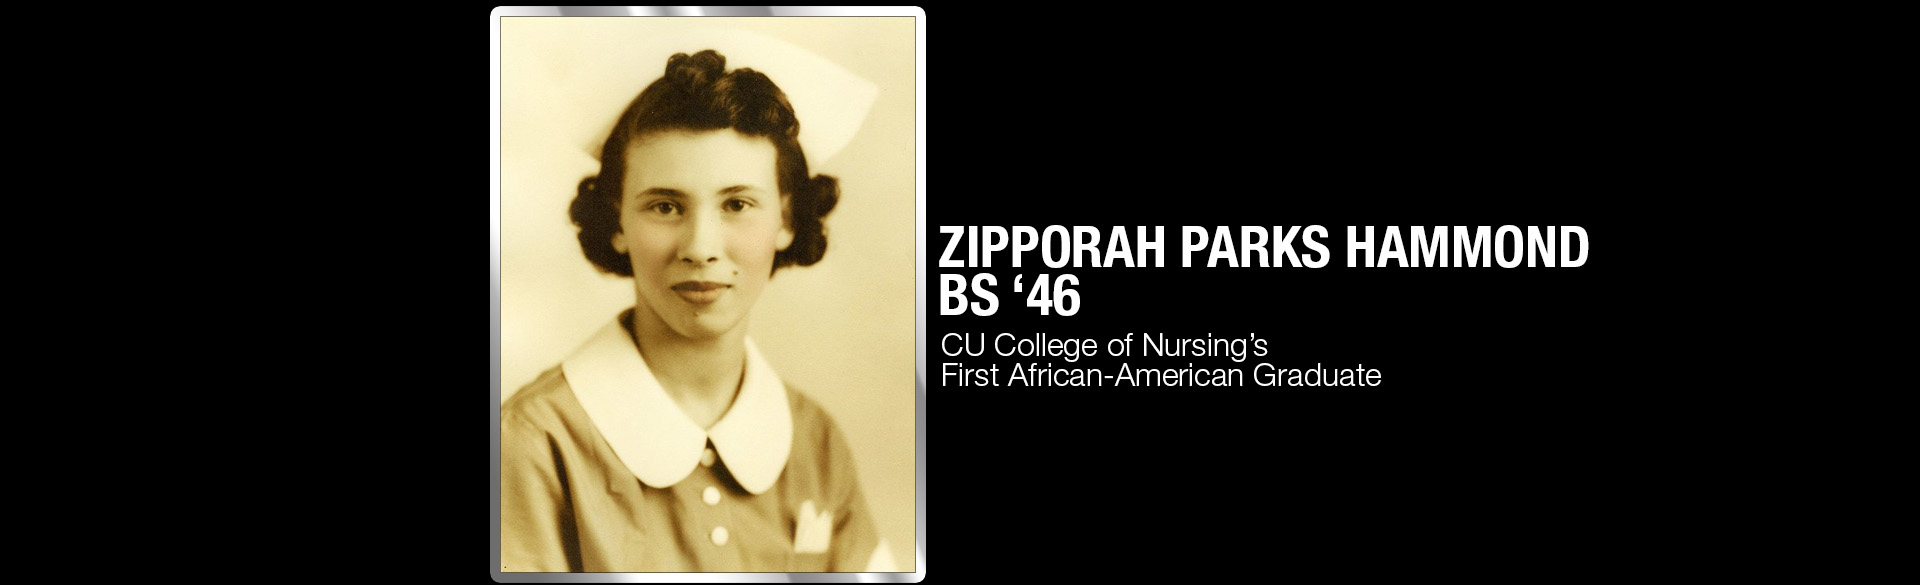 Zipporah Parks Hammond, BS ’46